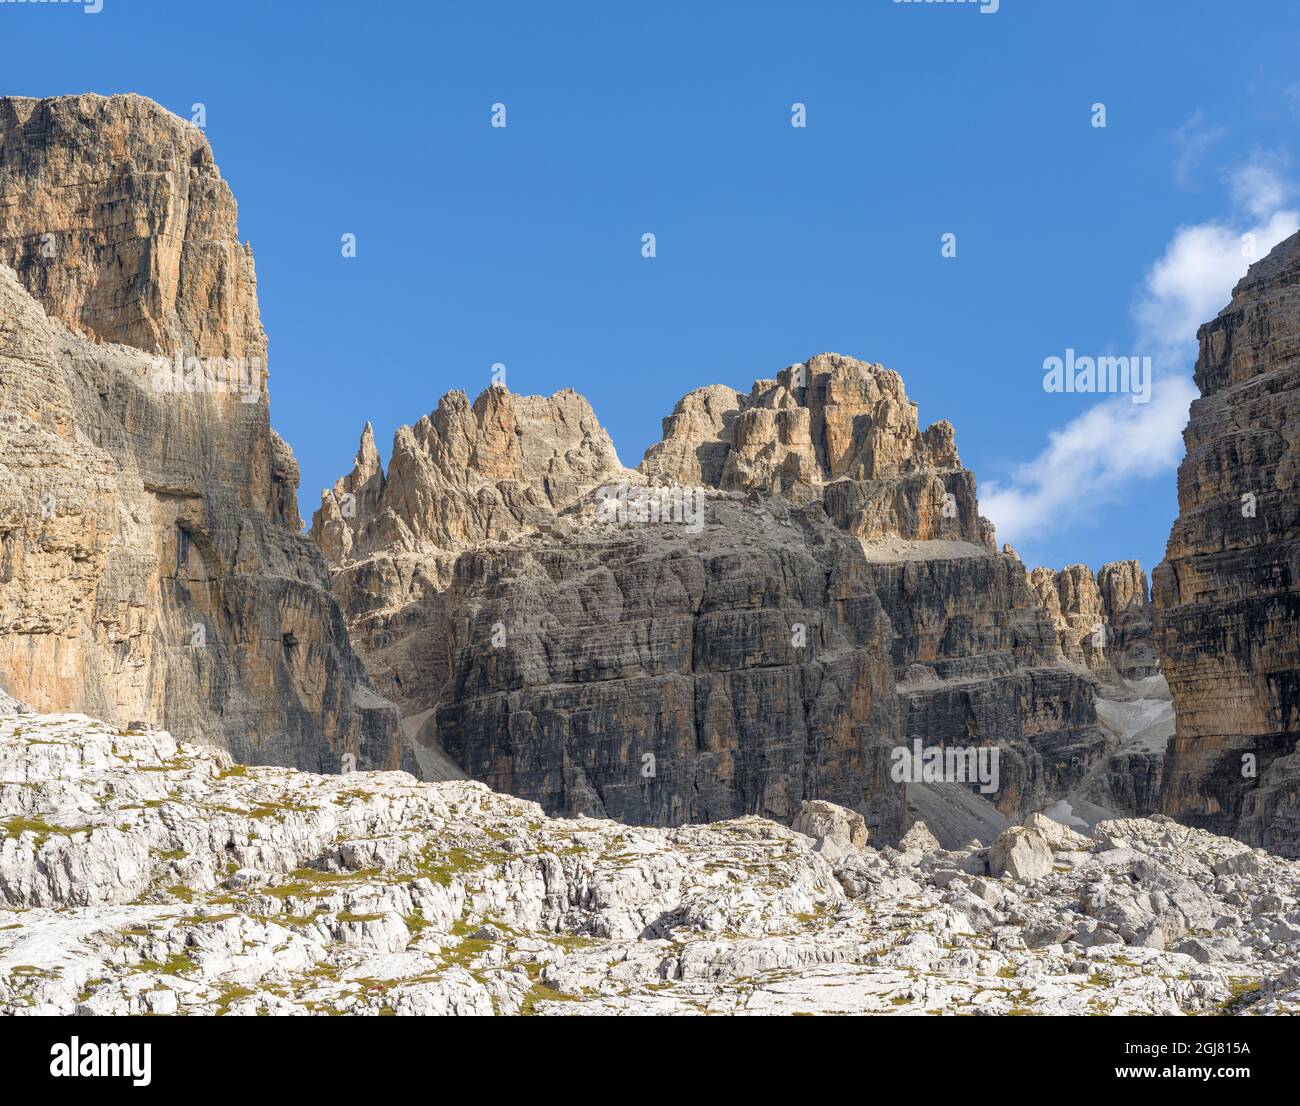 CIMA Falkner. Les Dolomites de Brenta, site classé au patrimoine mondial de l'UNESCO. Italie, Trentin, Val Rendena Banque D'Images